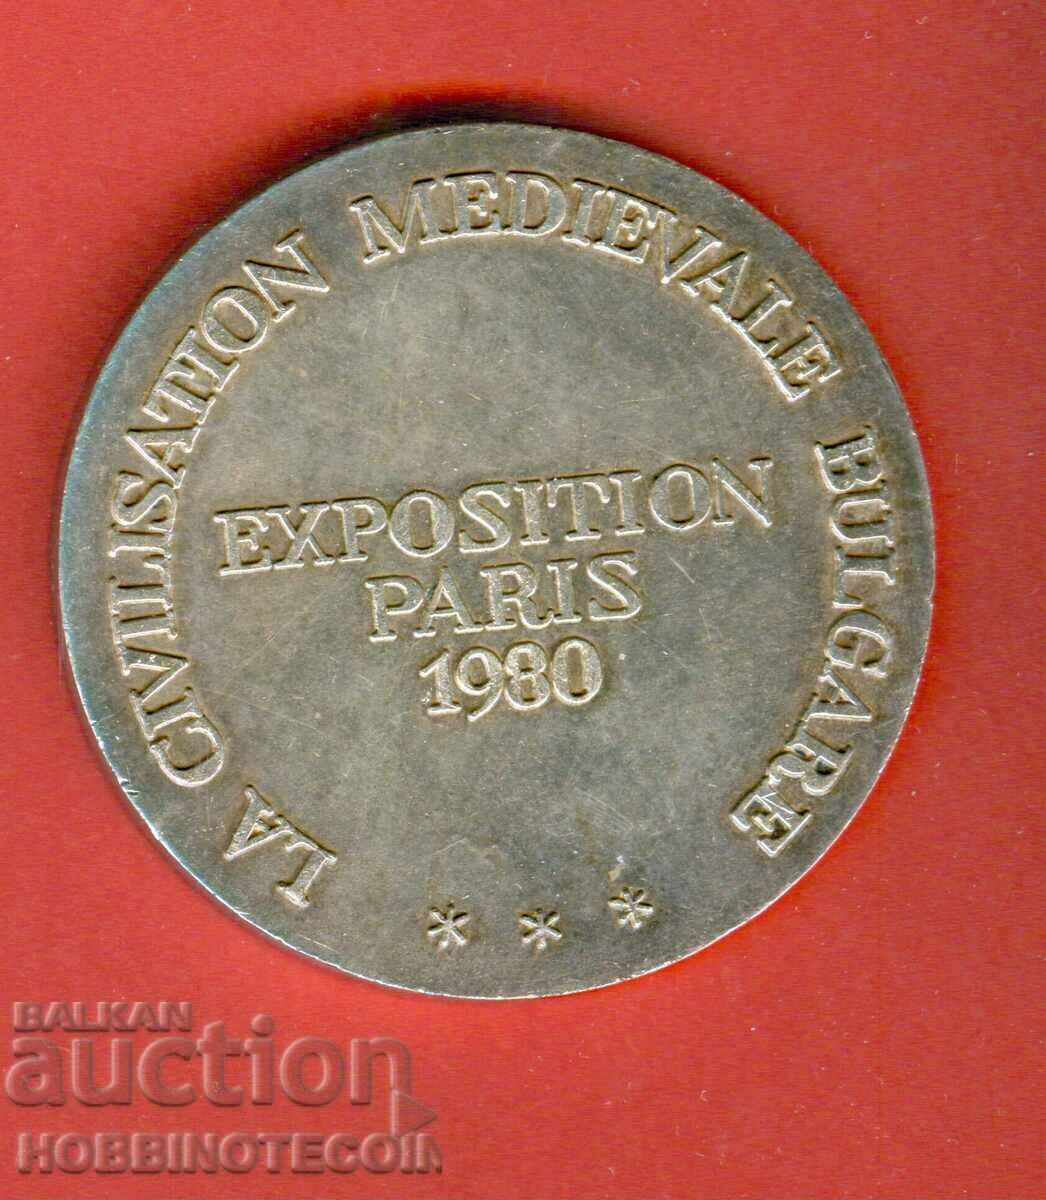 PLACHETA - PLACHETE - MEDALIA MAREA EXPOZITIE PARIS 1980 1